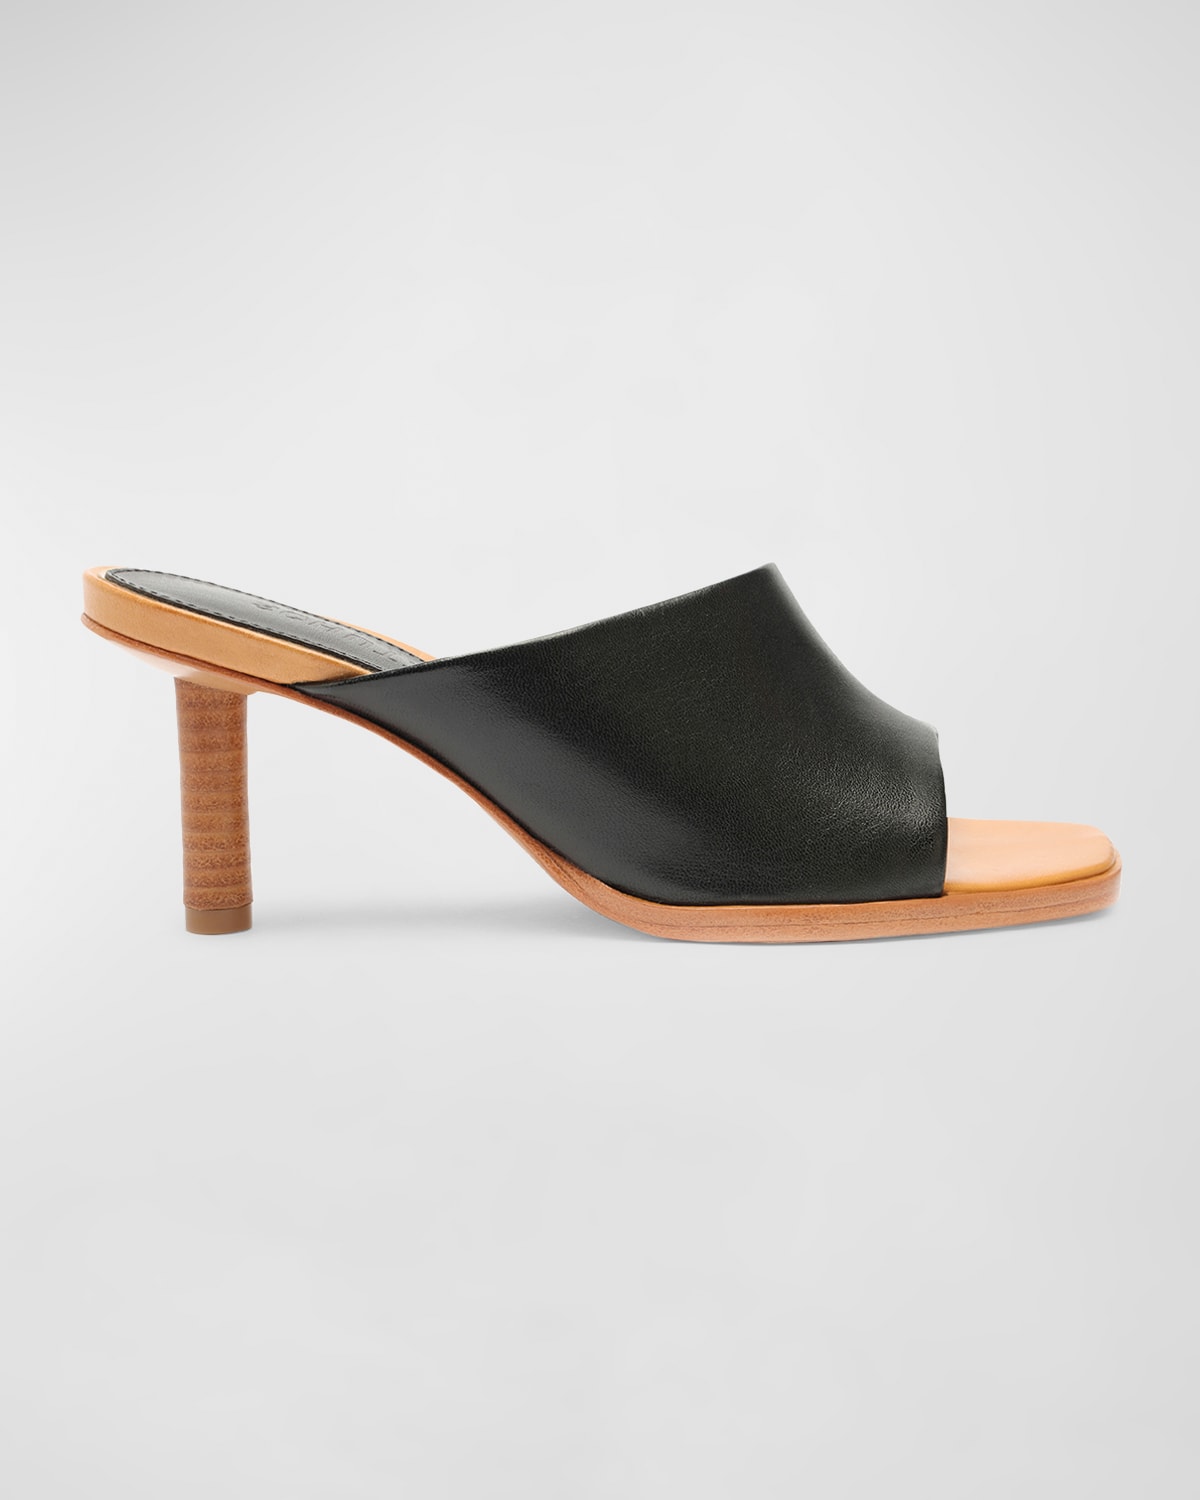 Schutz Zelda Leather Stiletto Mule Sandals In Black